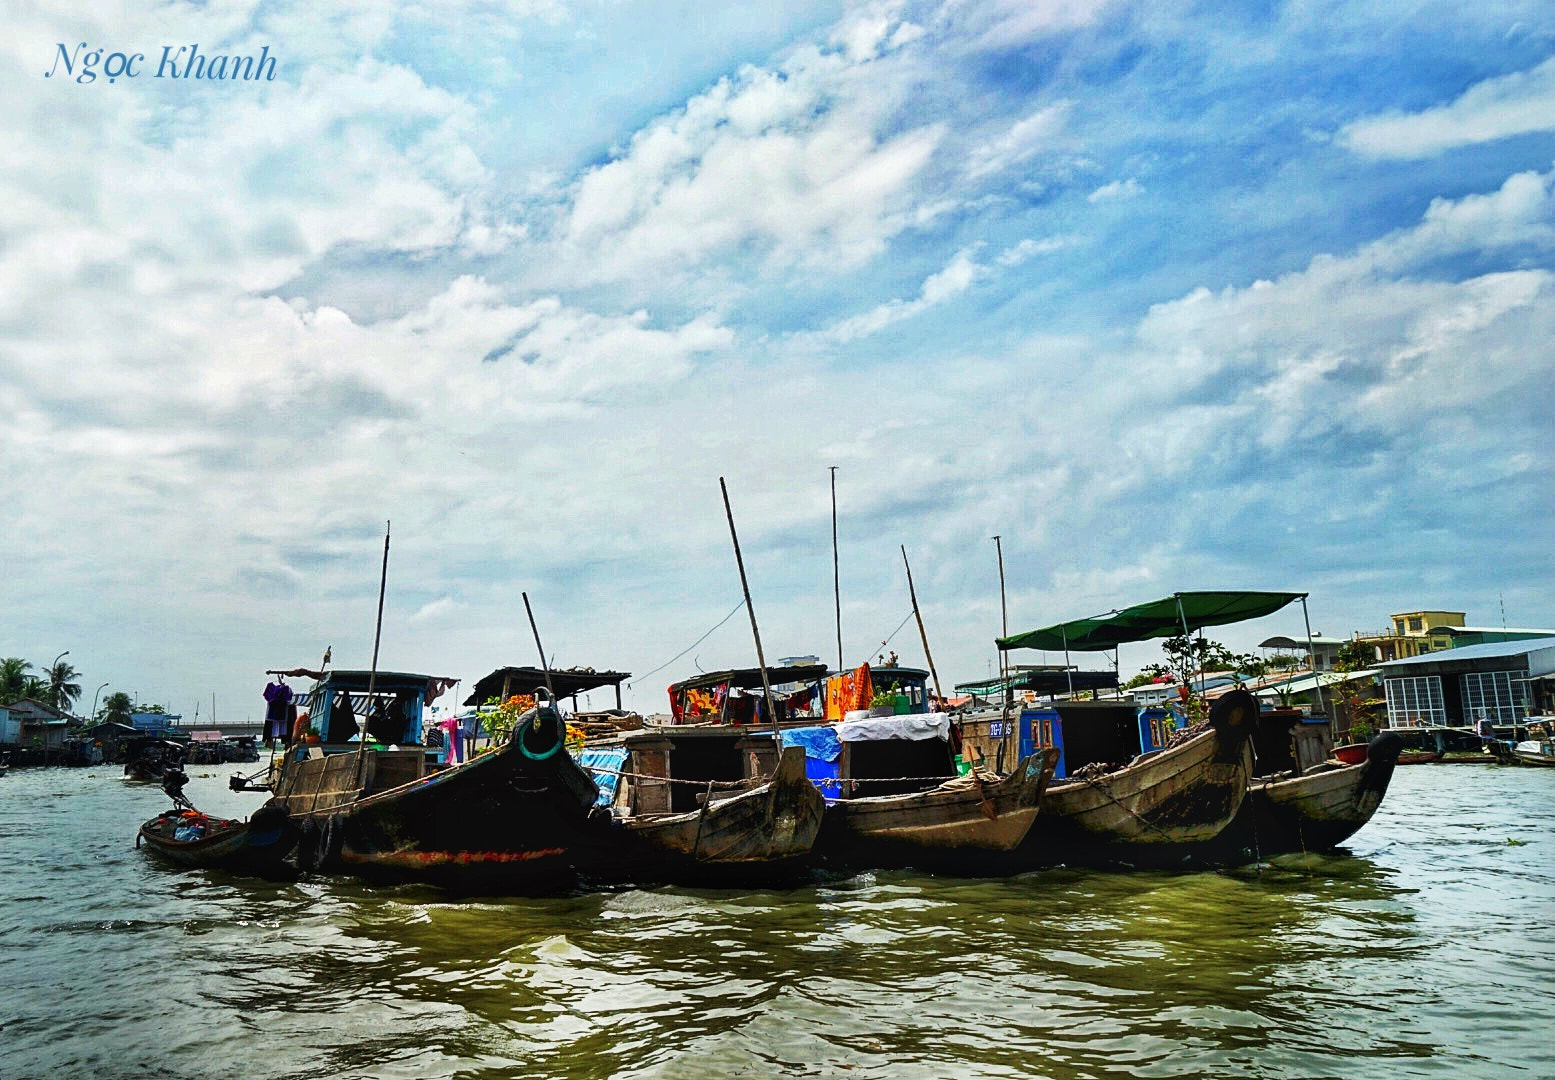 Sony a7 II + Sony Vario Tessar T* FE 24-70mm F4 ZA OSS sample photo. Cai rang floating market on vietnam tien giang river photography